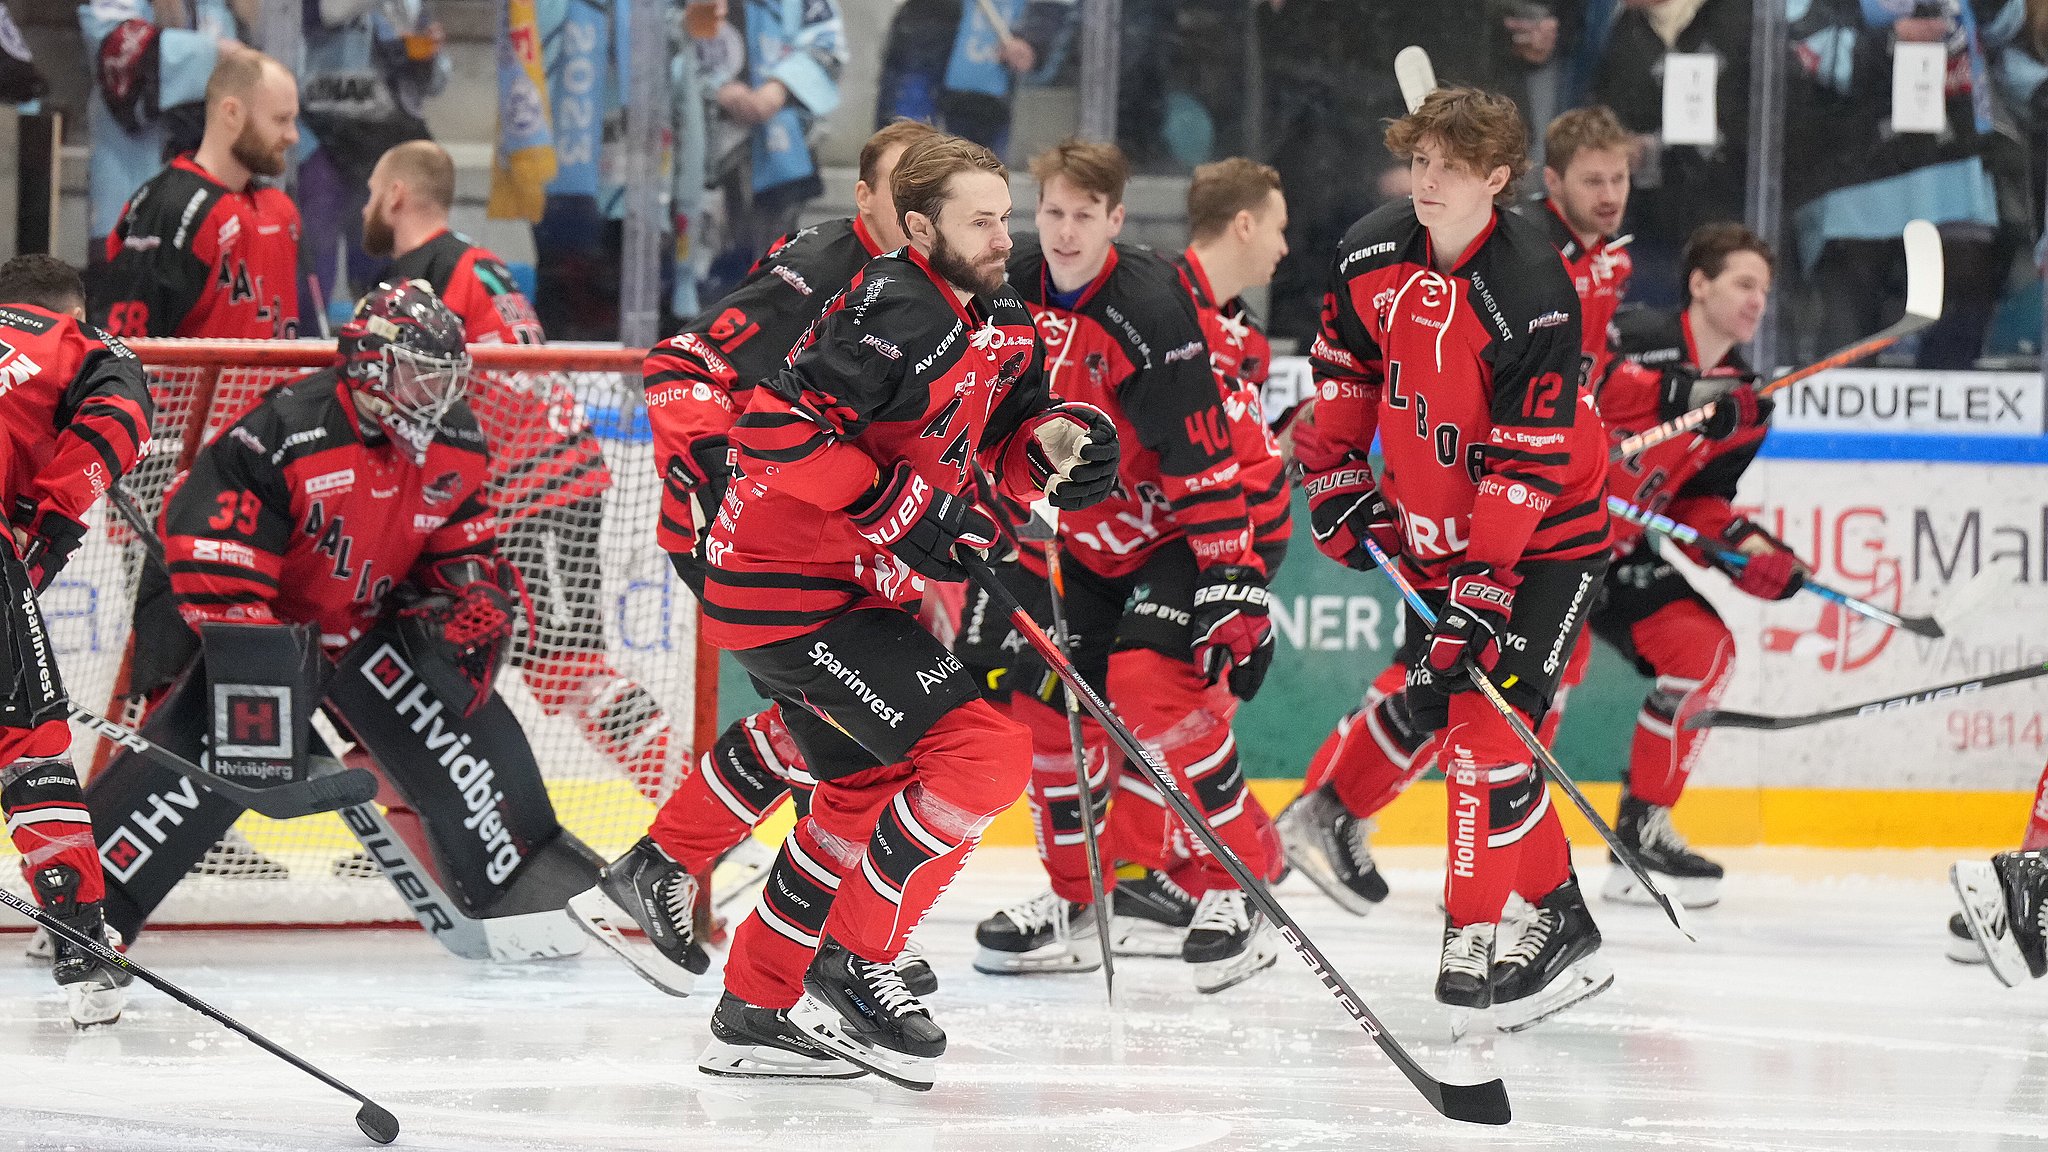 Udlandet ser misundeligt på Aalborg før stort ishockey-stævne